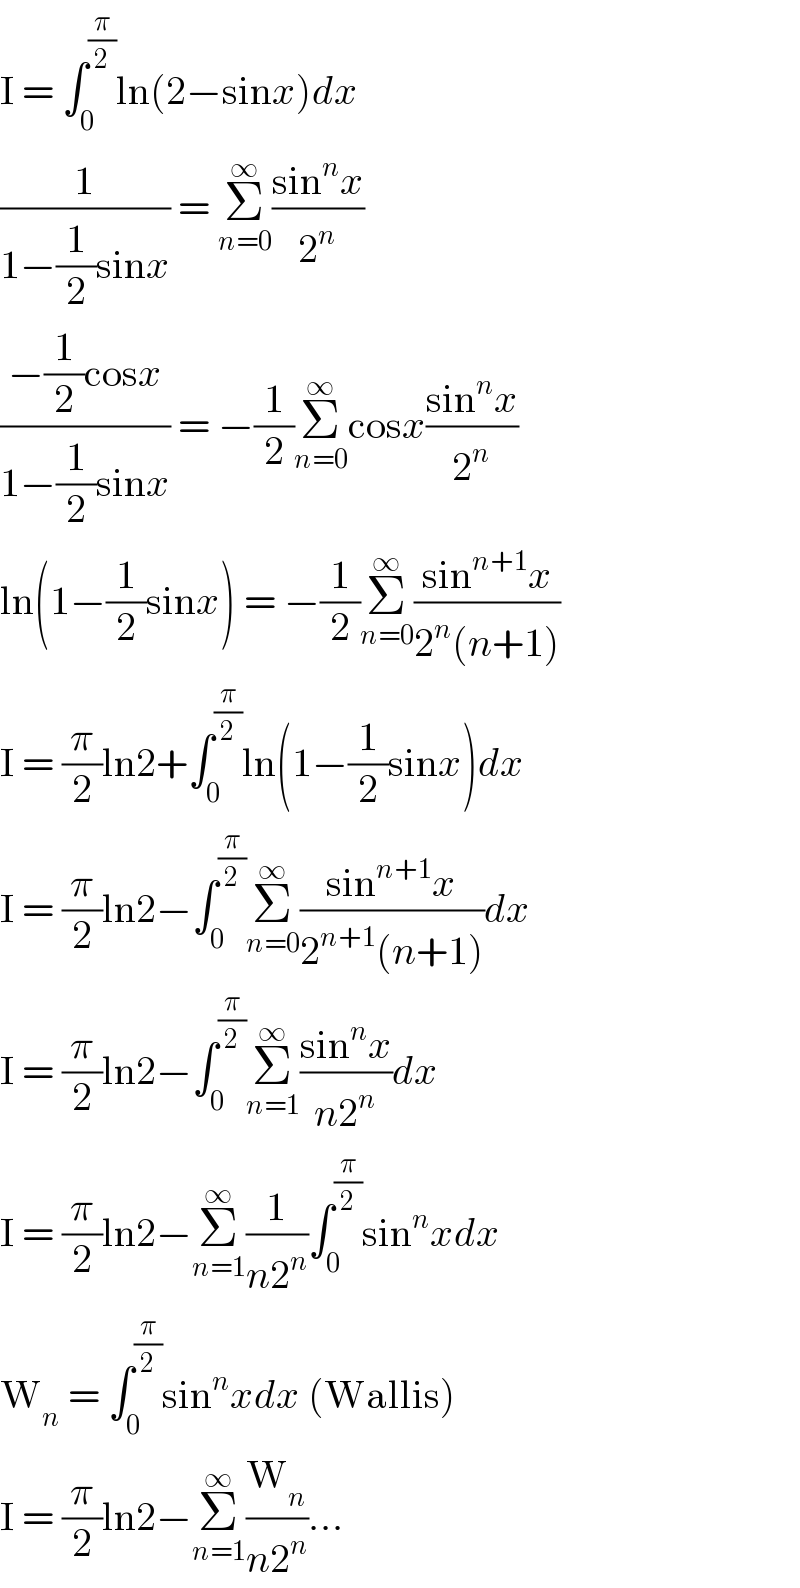 I = ∫_0 ^(π/2) ln(2−sinx)dx  (1/(1−(1/2)sinx)) = Σ_(n=0) ^∞ ((sin^n x)/2^n )  ((−(1/2)cosx)/(1−(1/2)sinx)) = −(1/2)Σ_(n=0) ^∞ cosx((sin^n x)/2^n )  ln(1−(1/2)sinx) = −(1/2)Σ_(n=0) ^∞ ((sin^(n+1) x)/(2^n (n+1)))  I = (π/2)ln2+∫_0 ^(π/2) ln(1−(1/2)sinx)dx  I = (π/2)ln2−∫_0 ^(π/2) Σ_(n=0) ^∞ ((sin^(n+1) x)/(2^(n+1) (n+1)))dx  I = (π/2)ln2−∫_0 ^(π/2) Σ_(n=1) ^∞ ((sin^n x)/(n2^n ))dx  I = (π/2)ln2−Σ_(n=1) ^∞ (1/(n2^n ))∫_0 ^(π/2) sin^n xdx  W_n  = ∫_0 ^(π/2) sin^n xdx (Wallis)  I = (π/2)ln2−Σ_(n=1) ^∞ (W_n /(n2^n ))...  